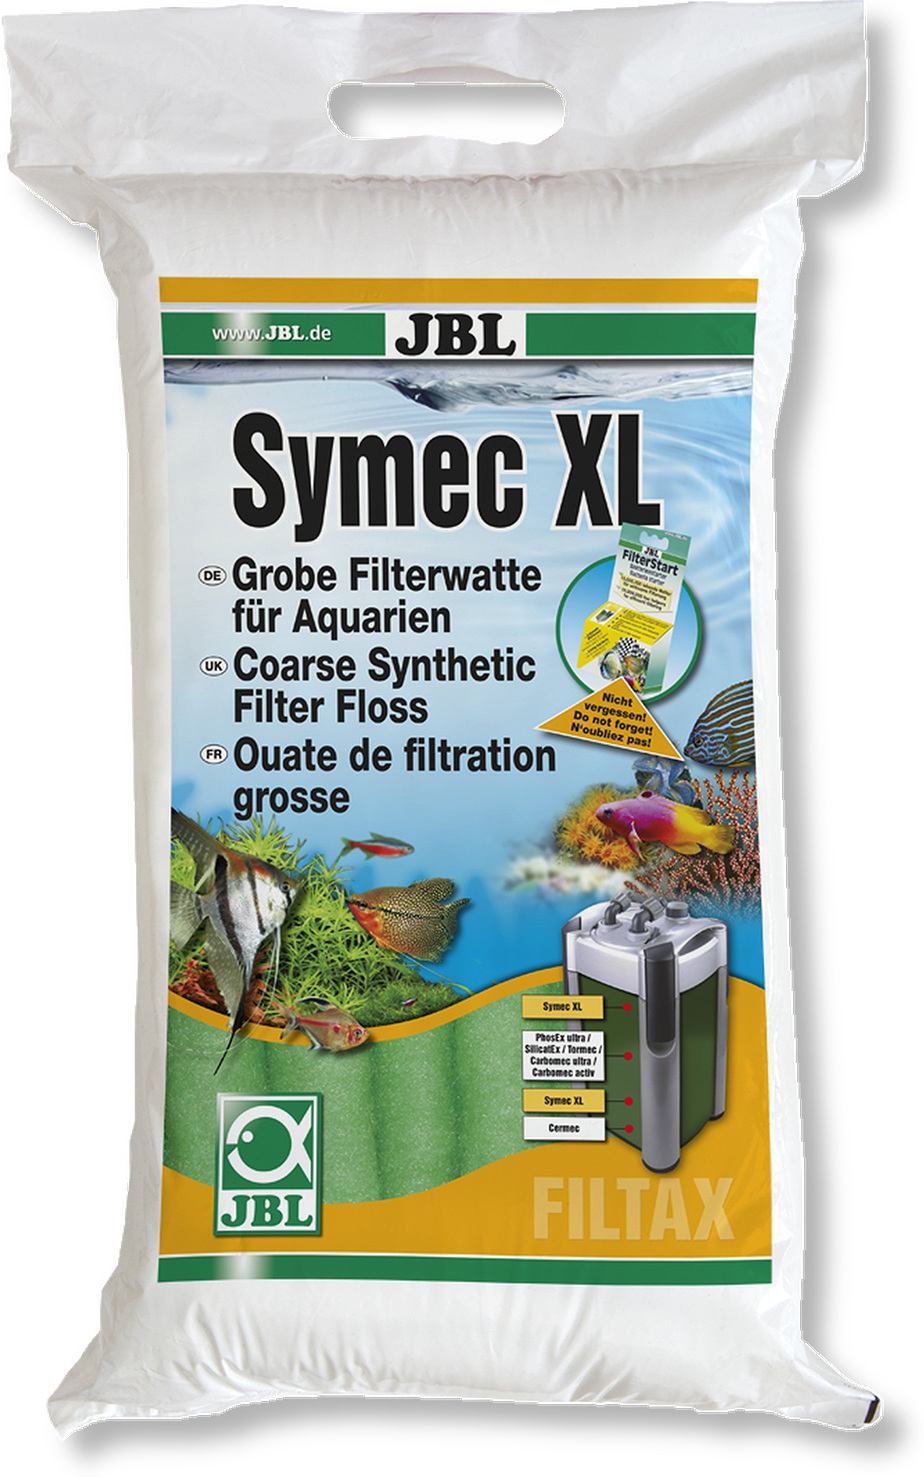 JBL Symec XL material filtrant verde